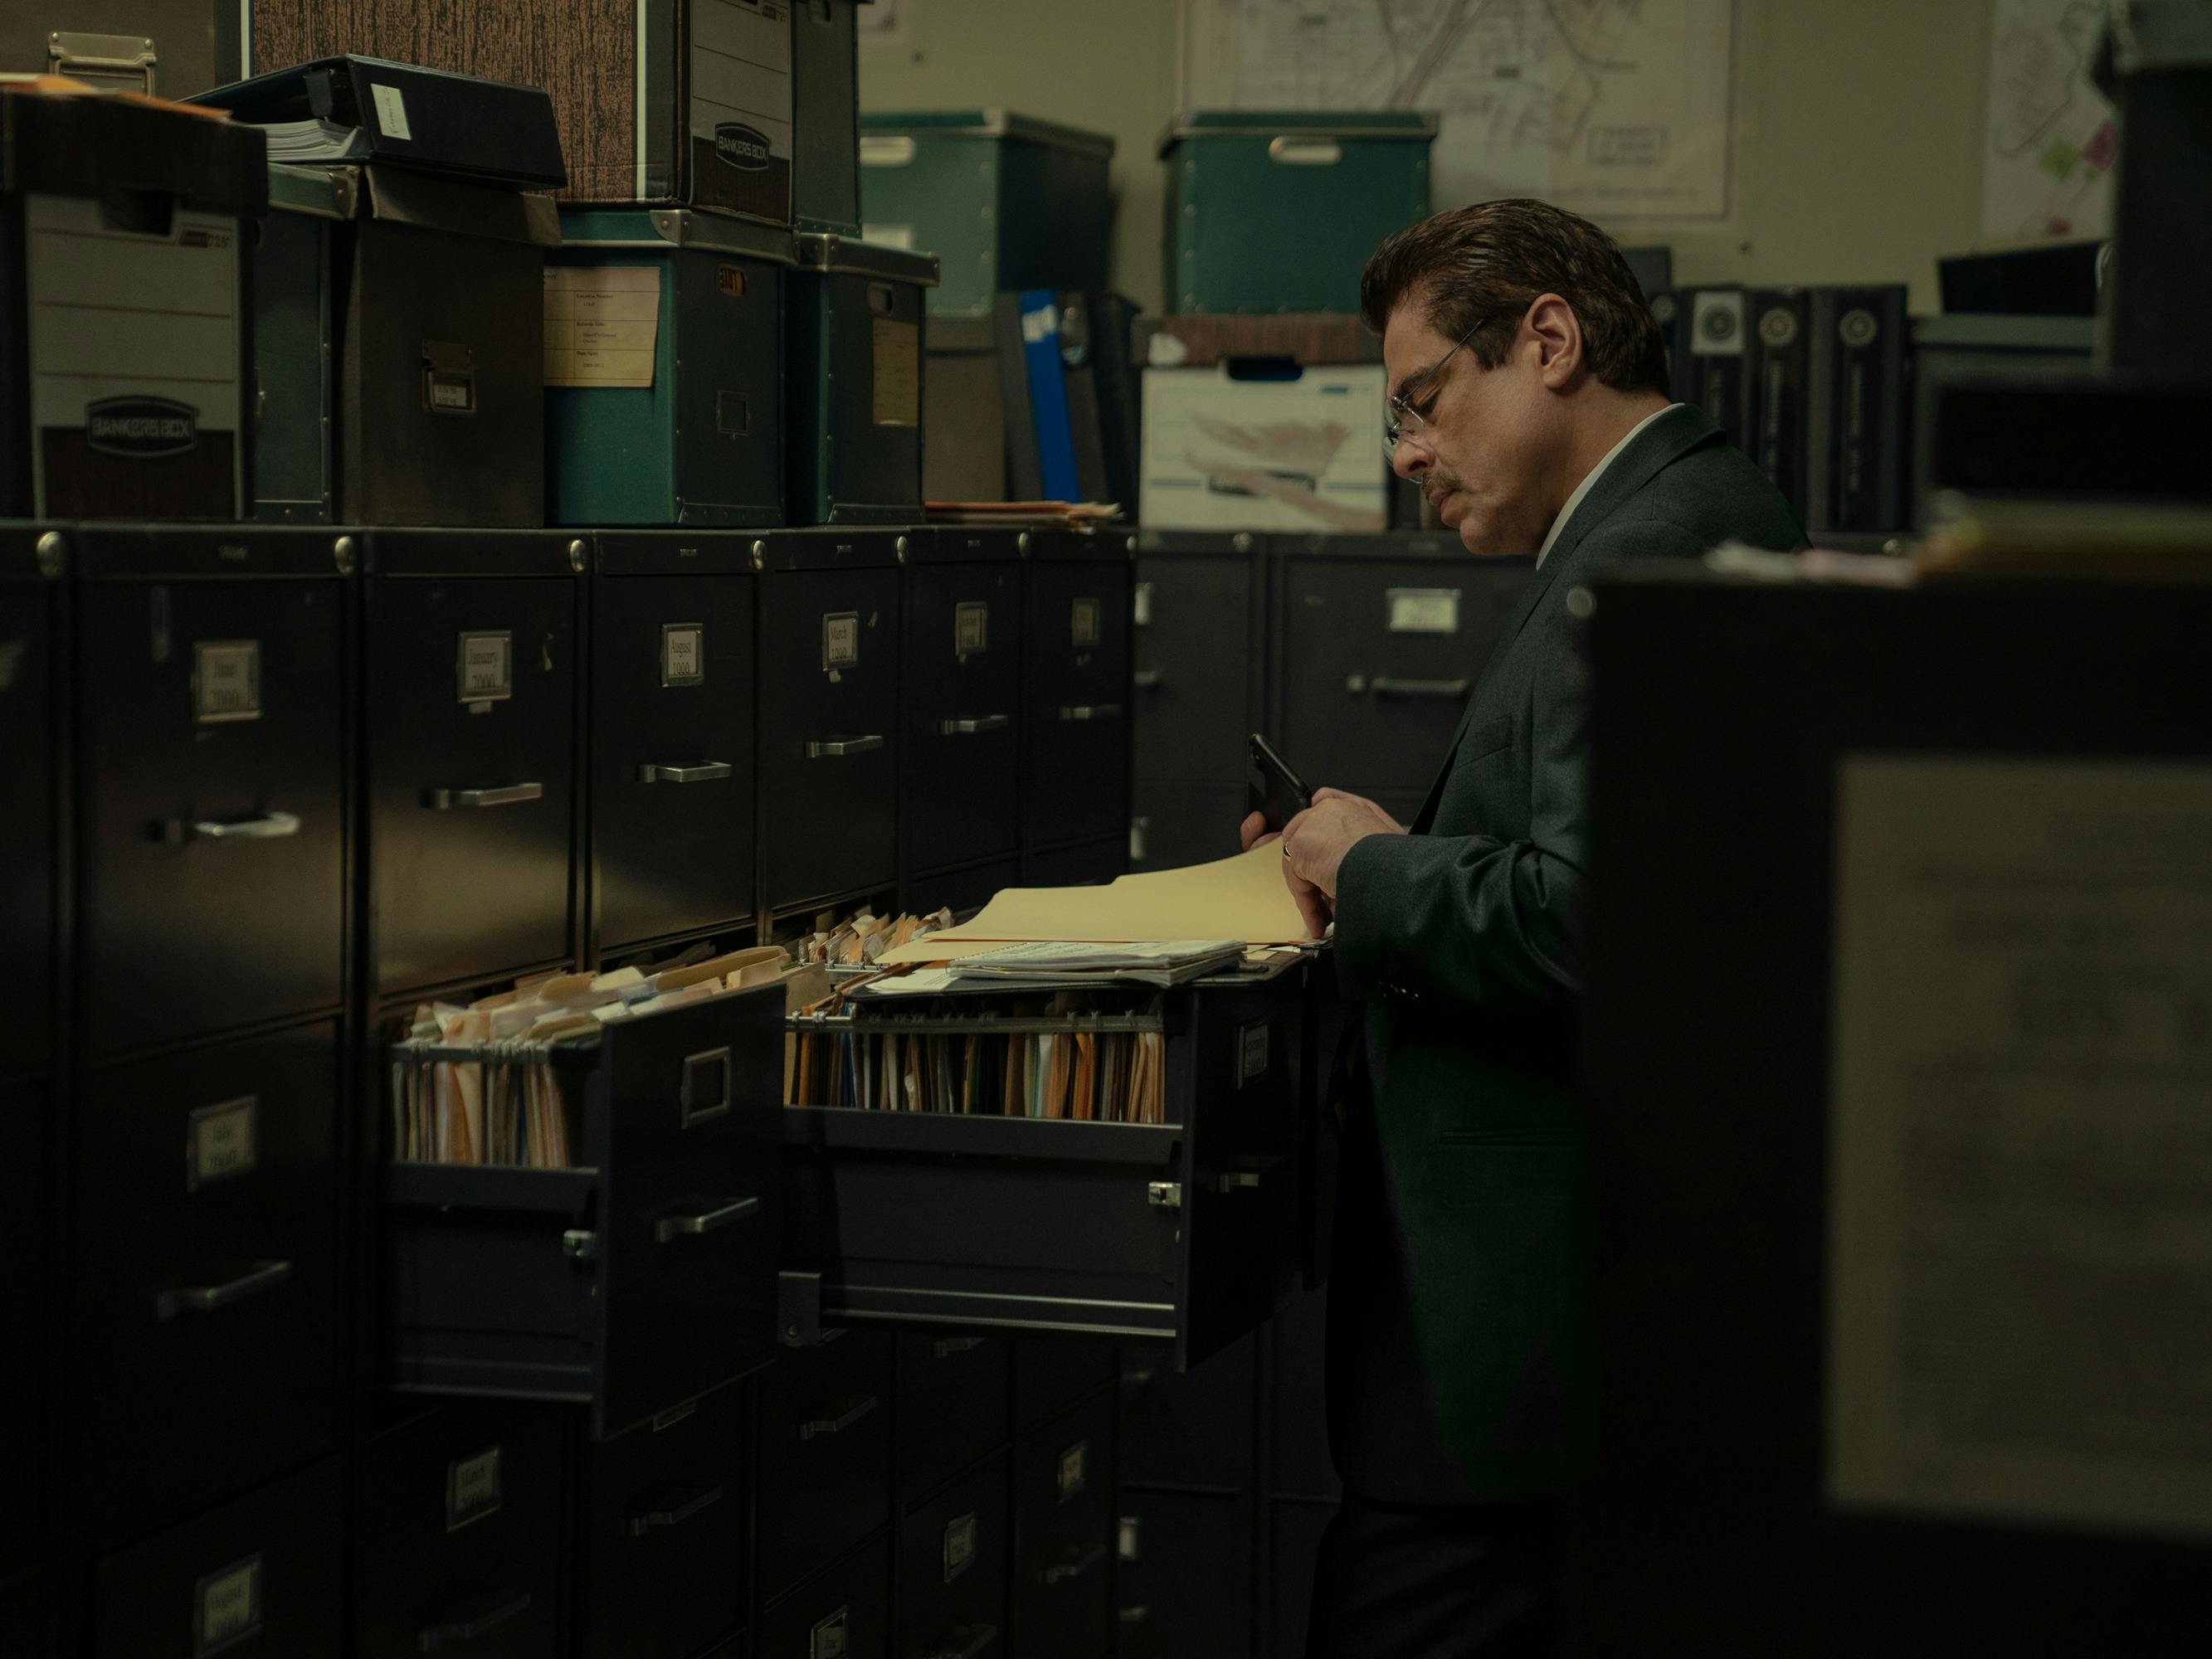 Tom Nichols (Benicio del Toro) studies some files in a darkened office.